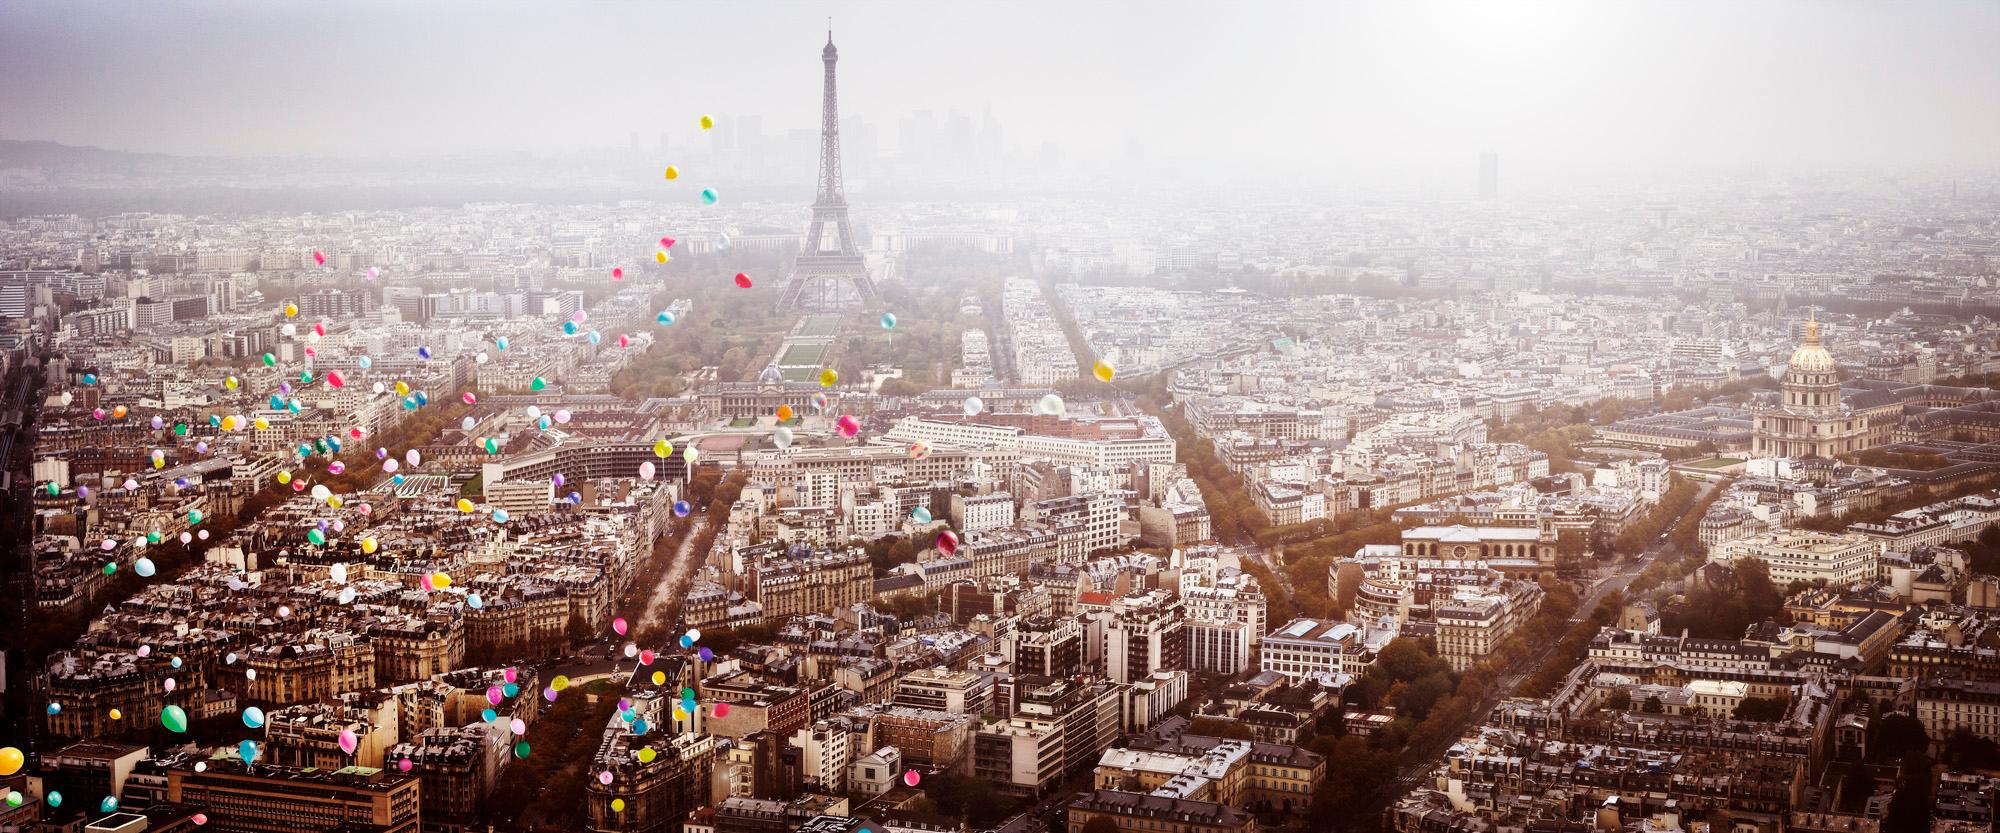 Balloons au-dessus de Paris  - Photograph de David Drebin